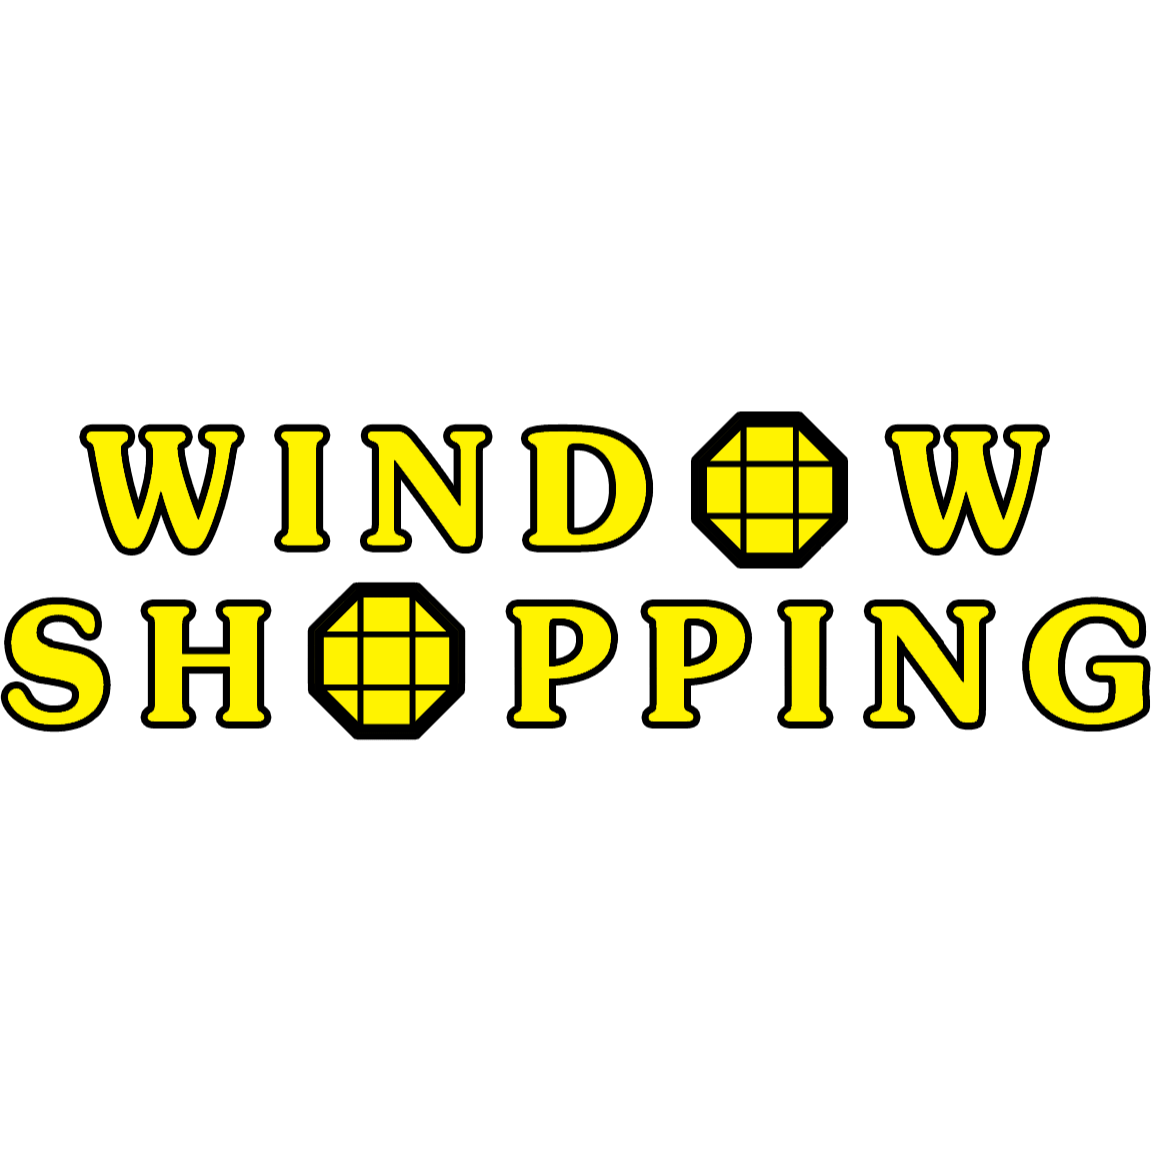 Window Shopping